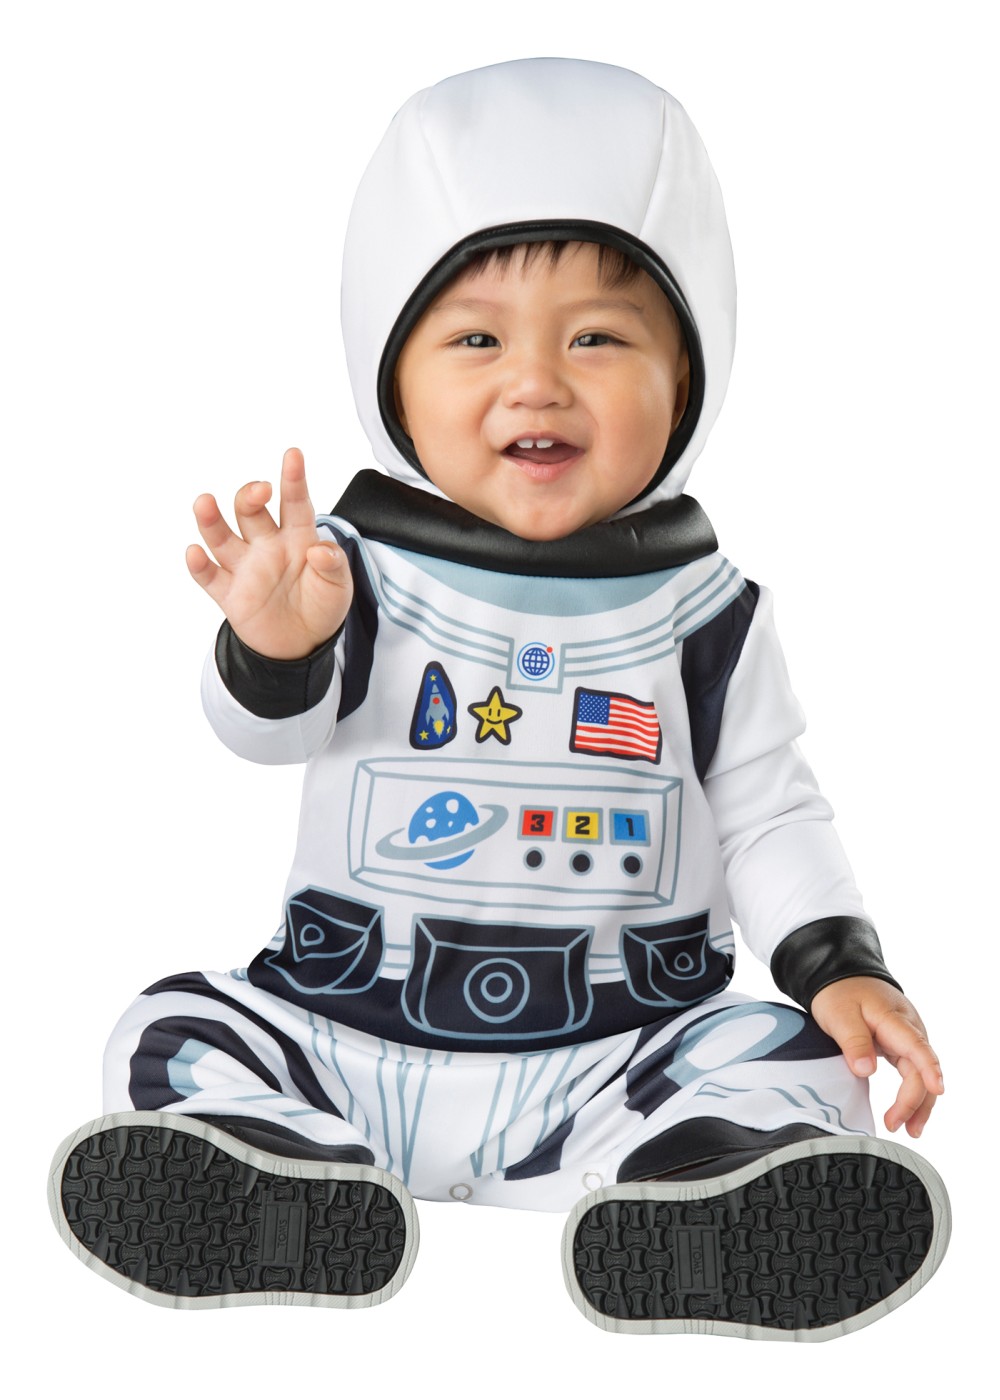 Nasa Baby Costume